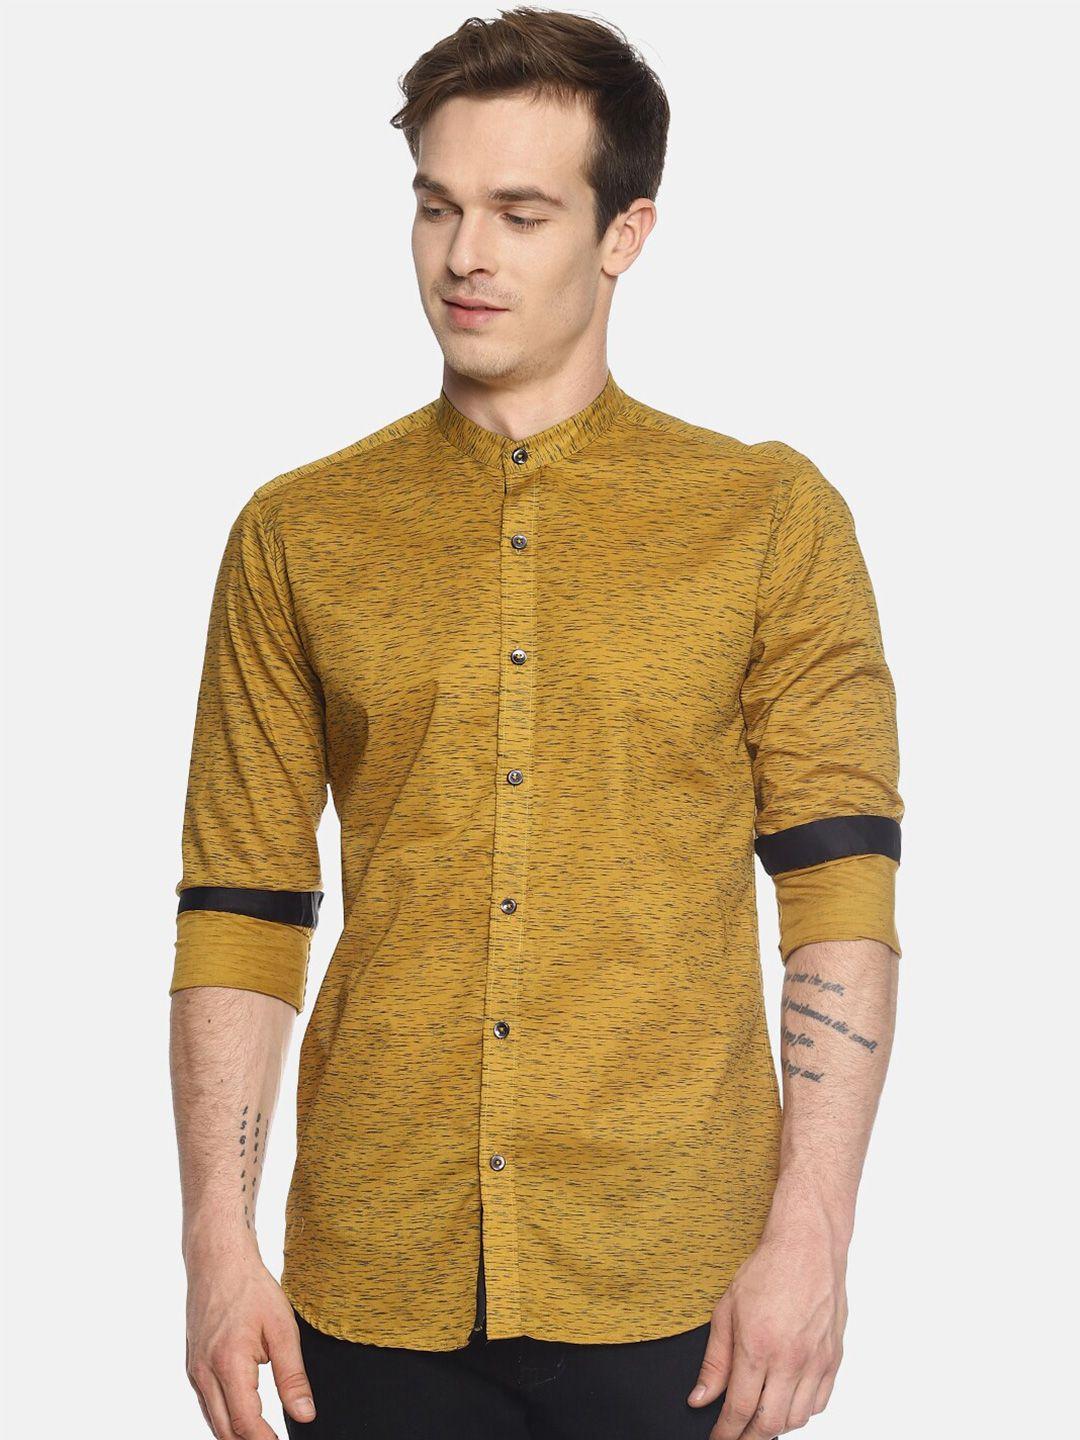 couper & coll men yellow premium slim fit printed casual shirt